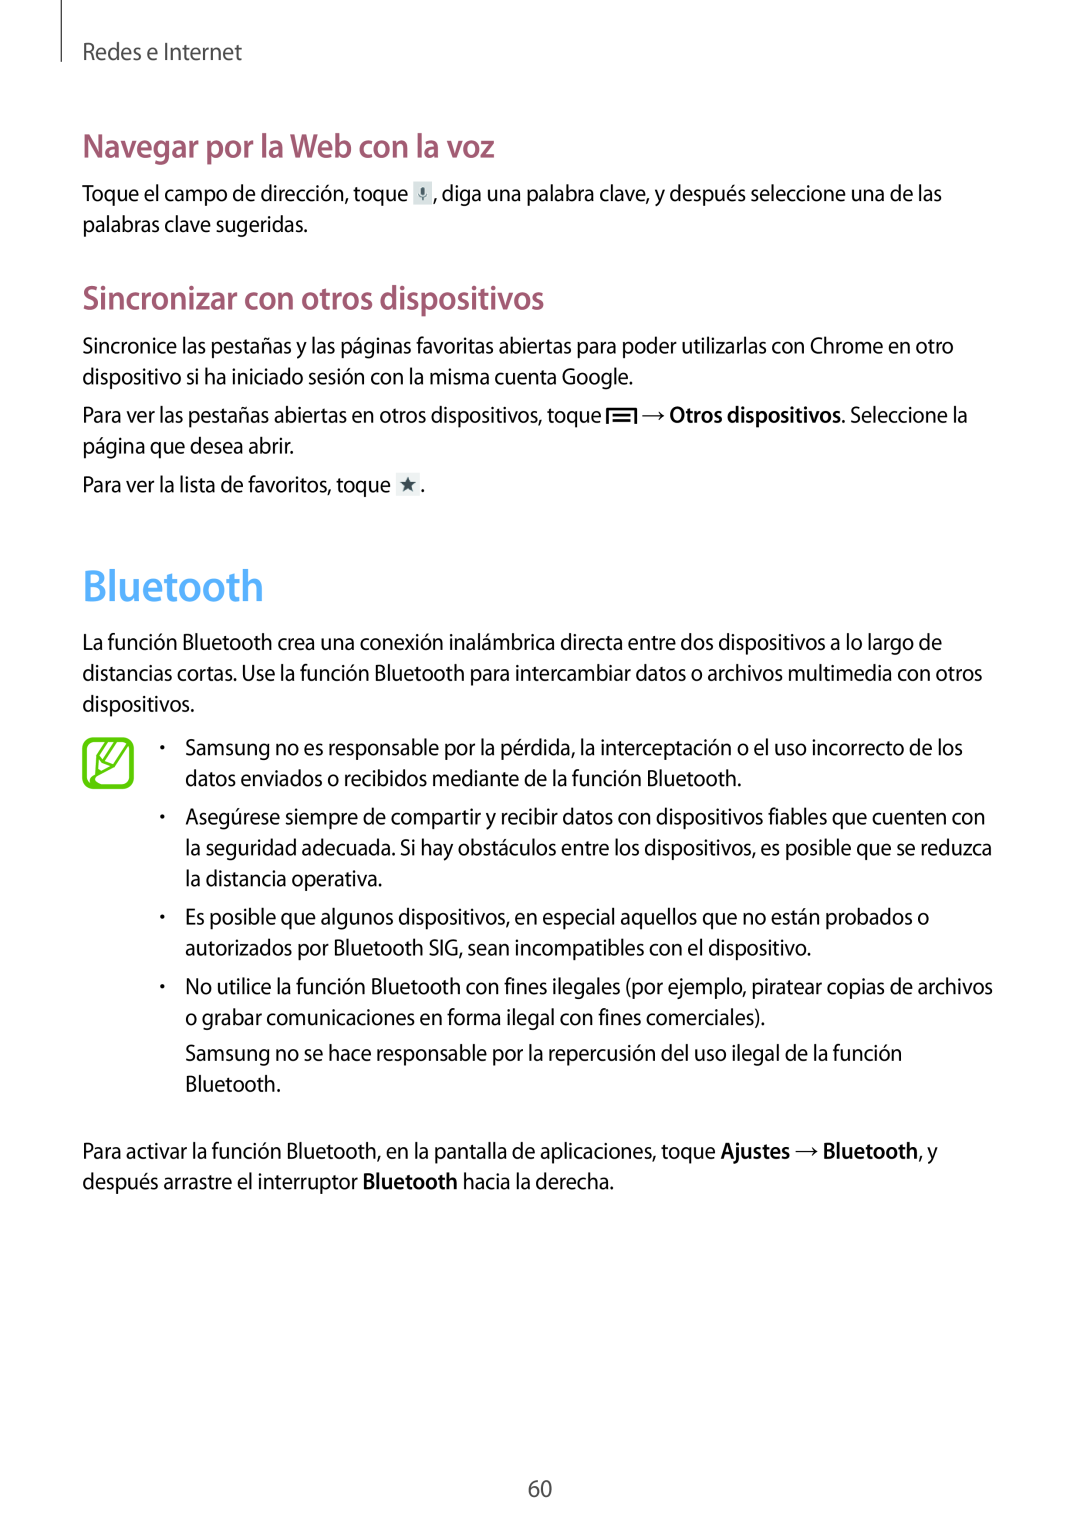 Samsung GT-I8730ZWAPHE Bluetooth, Sincronizar con otros dispositivos, Navegar por la Web con la voz, Redes e Internet 